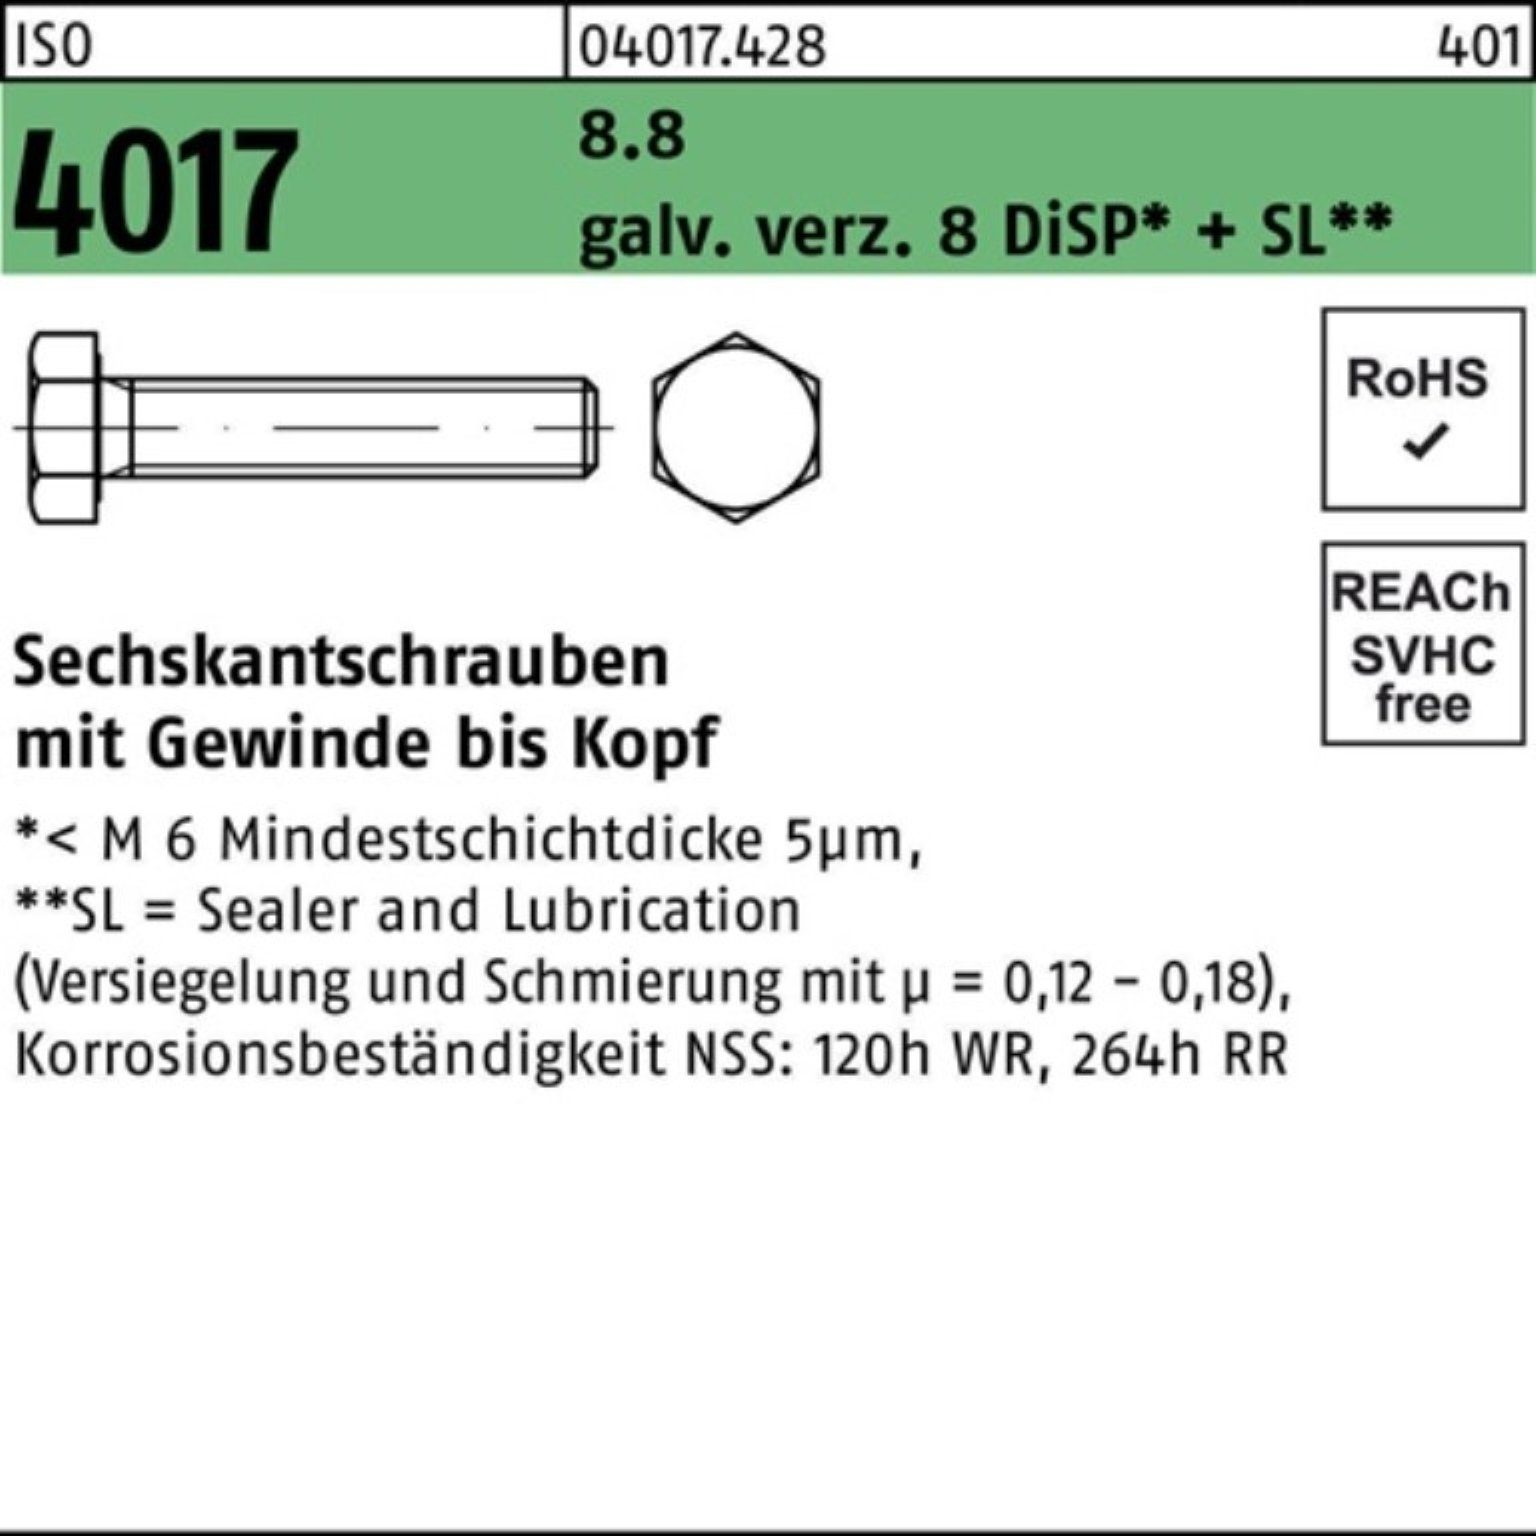 Bufab Sechskantschraube 100er Pack Sechskantschraube ISO 4017 VG M16x 70 8.8 galv.verz. 8 DiSP